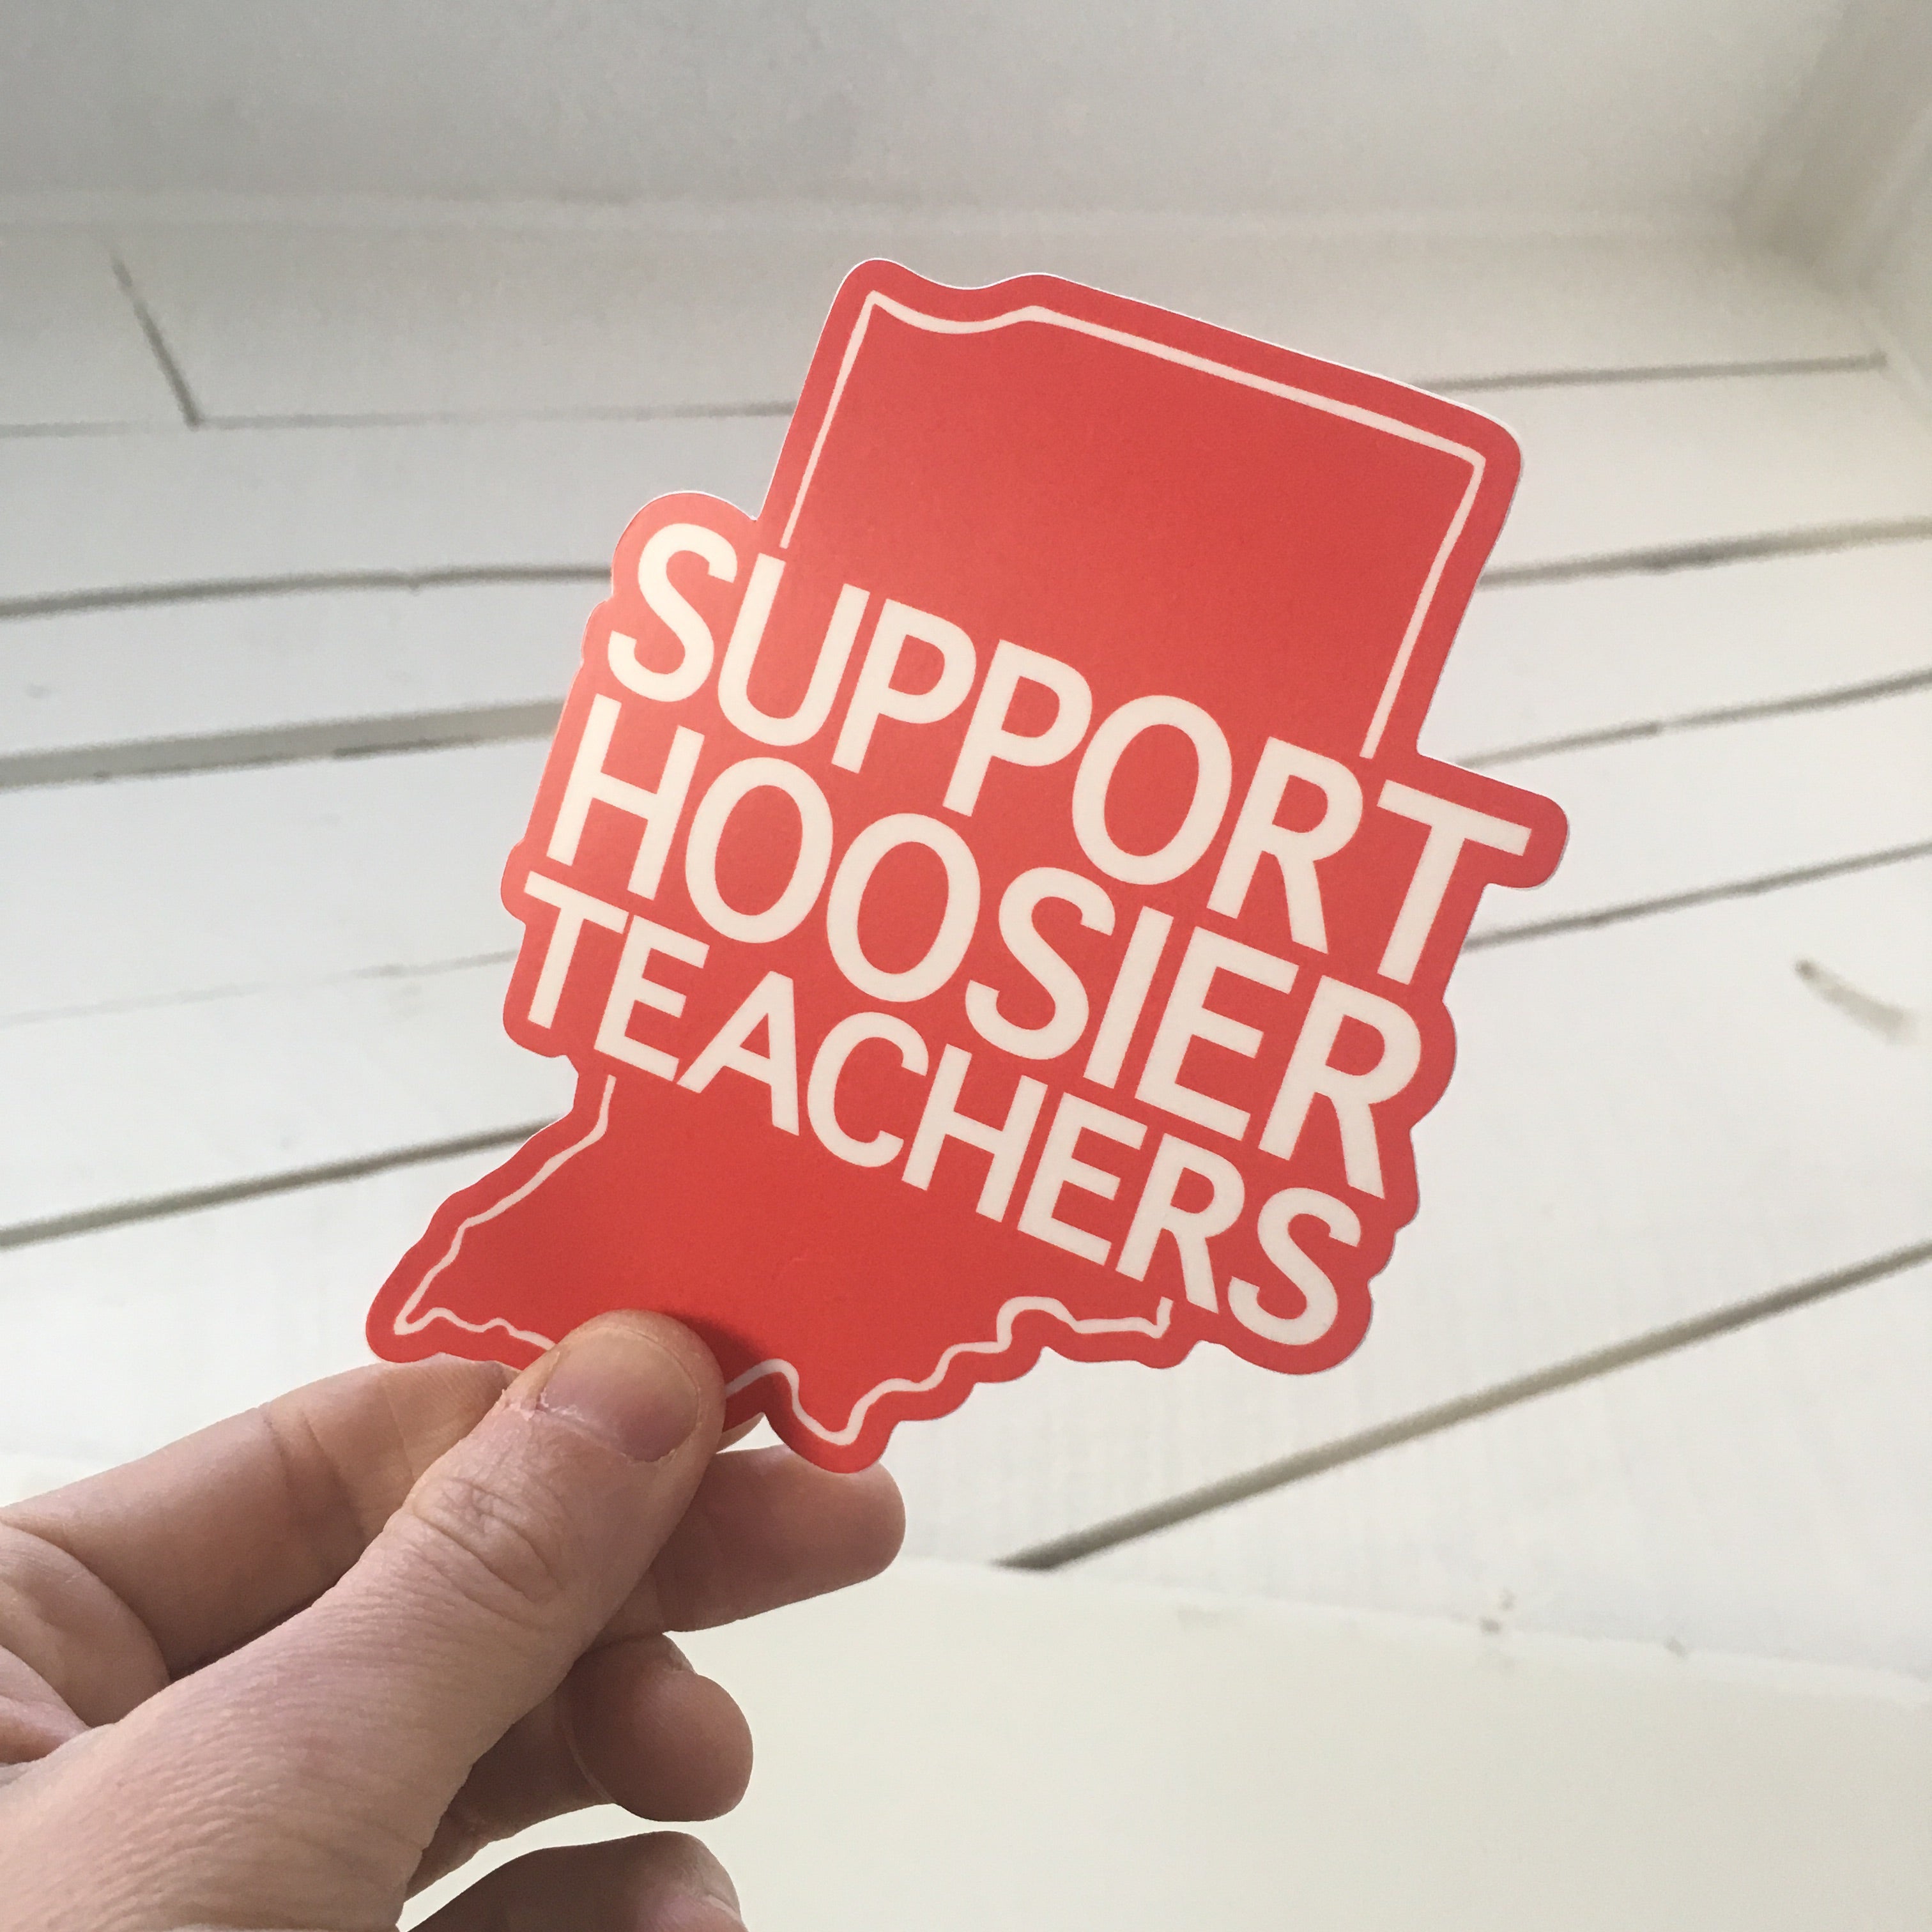 Support Hoosier Teachers sticker Indiana RedForEd - badkneesTs | badkneesTs